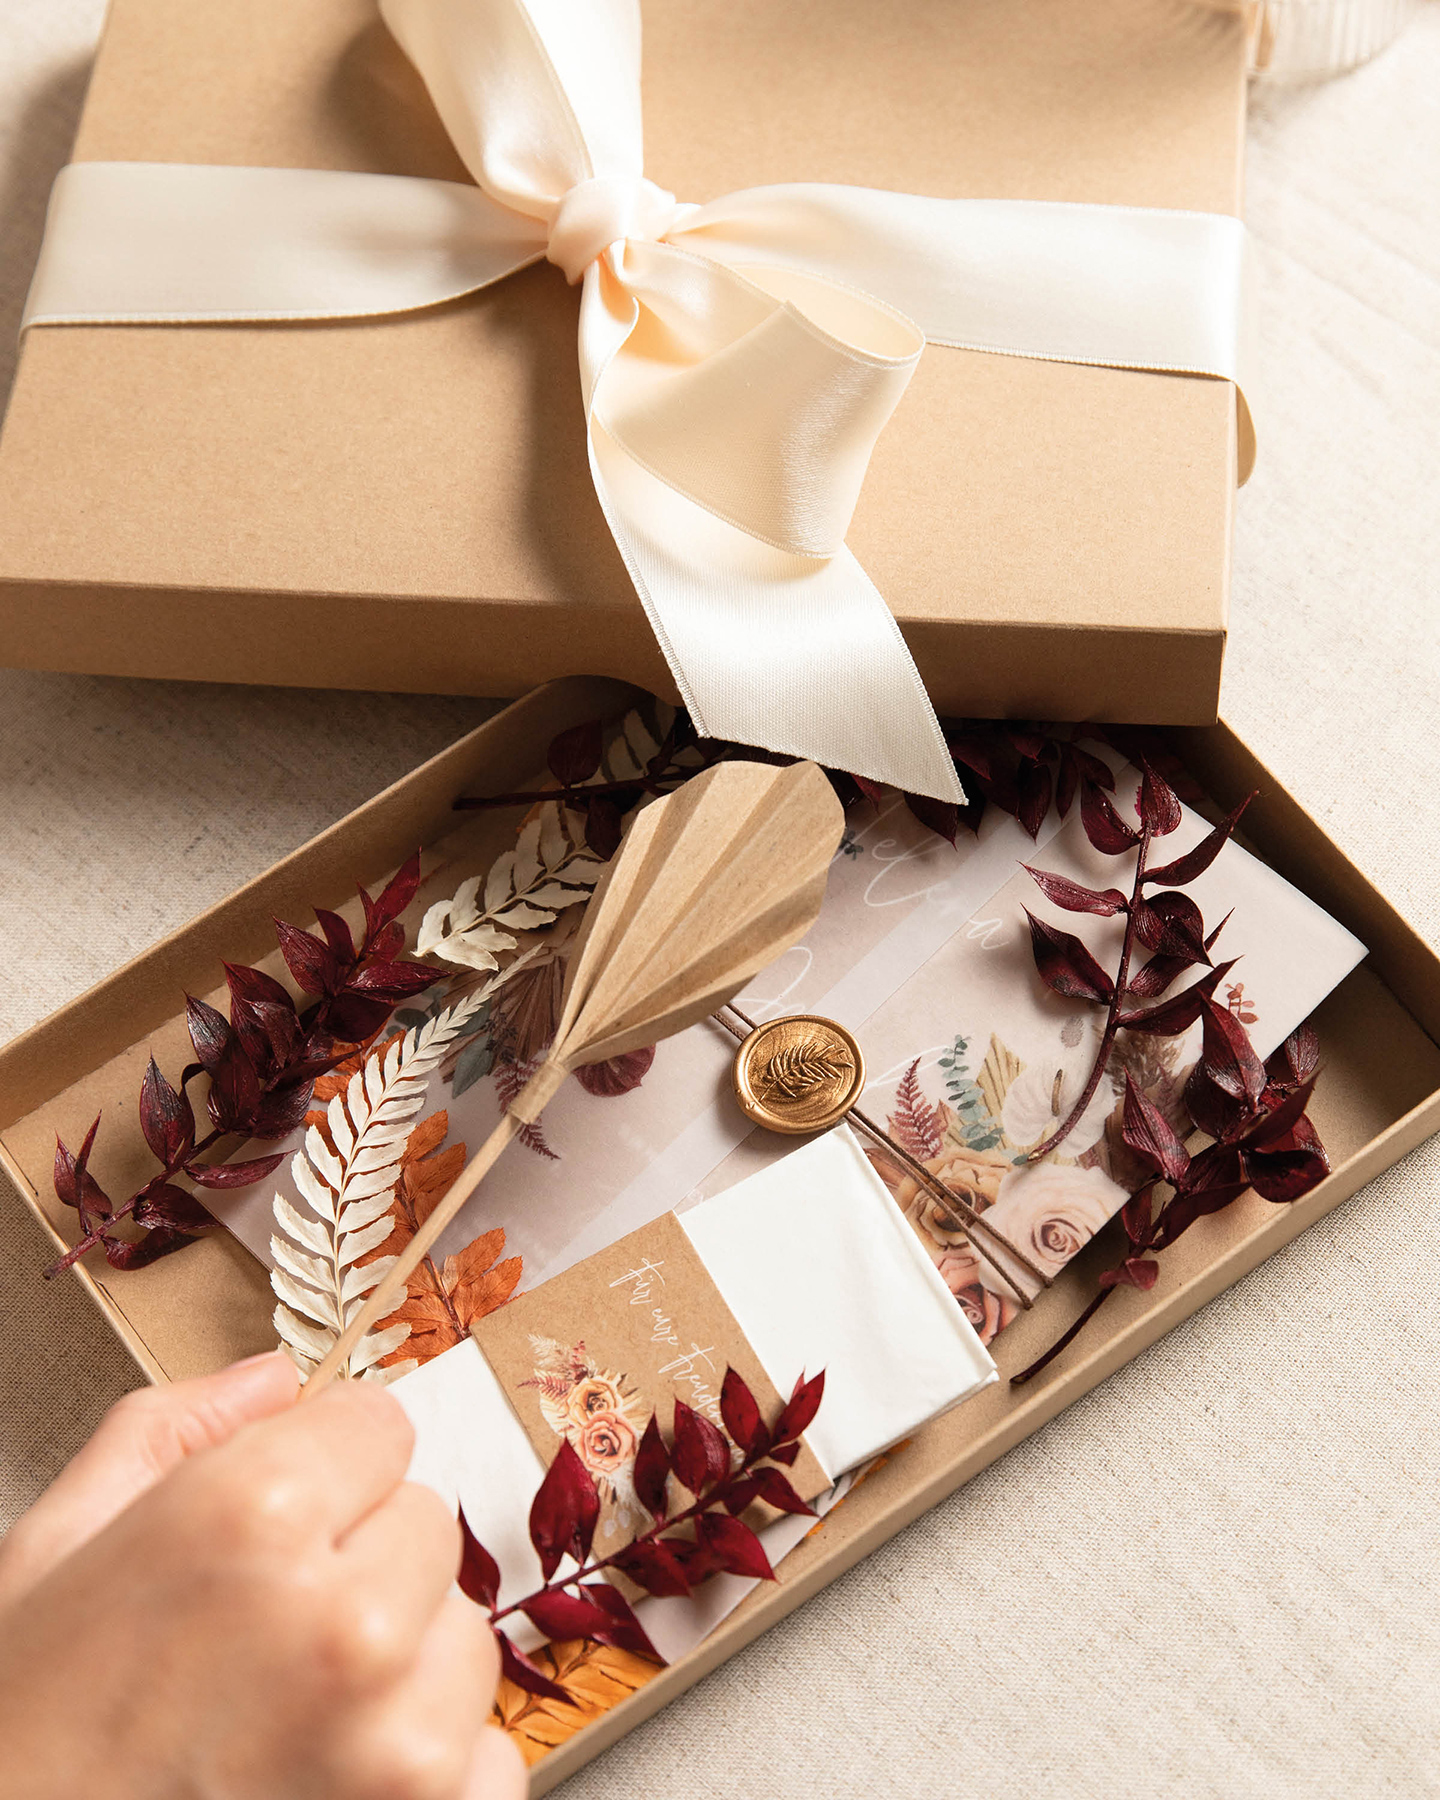 Hochzeitseinladung selber basteln in einer Überraschungsbox für die Gäste: Trockenblumen, Hochzeitseinladung, DIY-Palmenblätter und ein Taschentuch für die Freudentränen zieren die Box